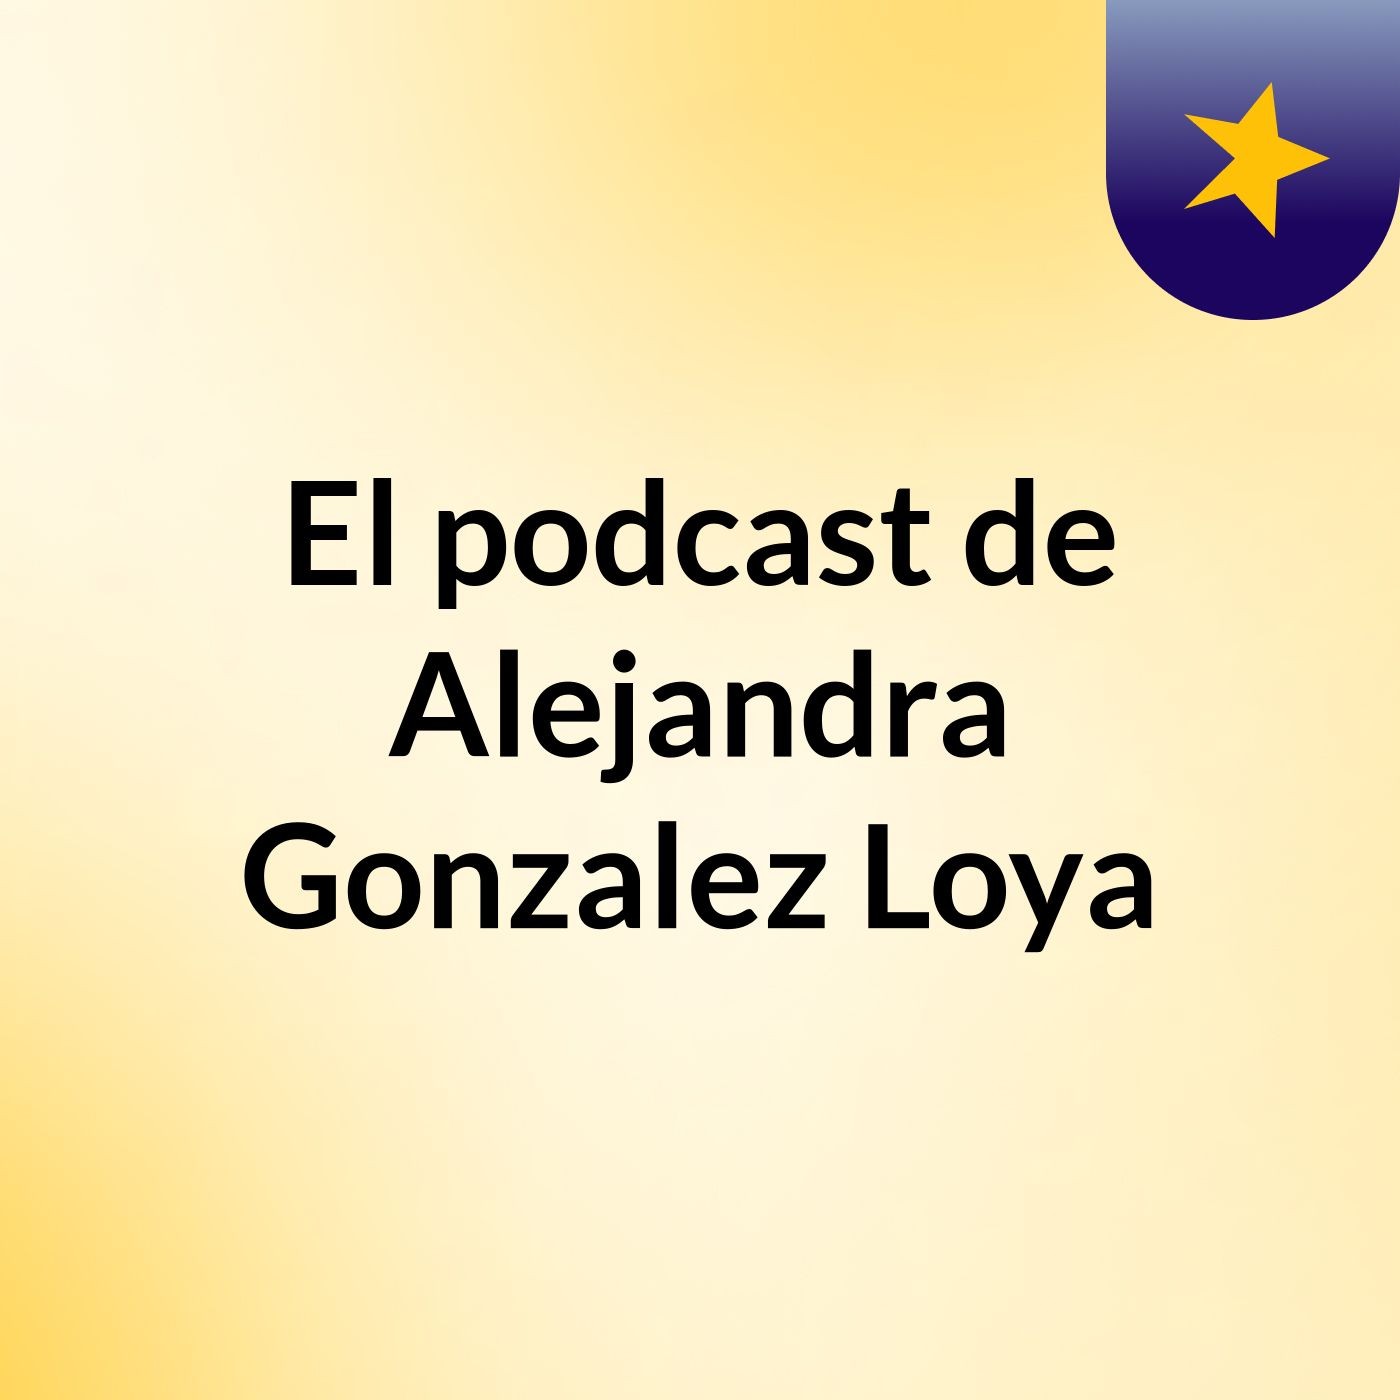 El podcast de Alejandra Gonzalez Loya